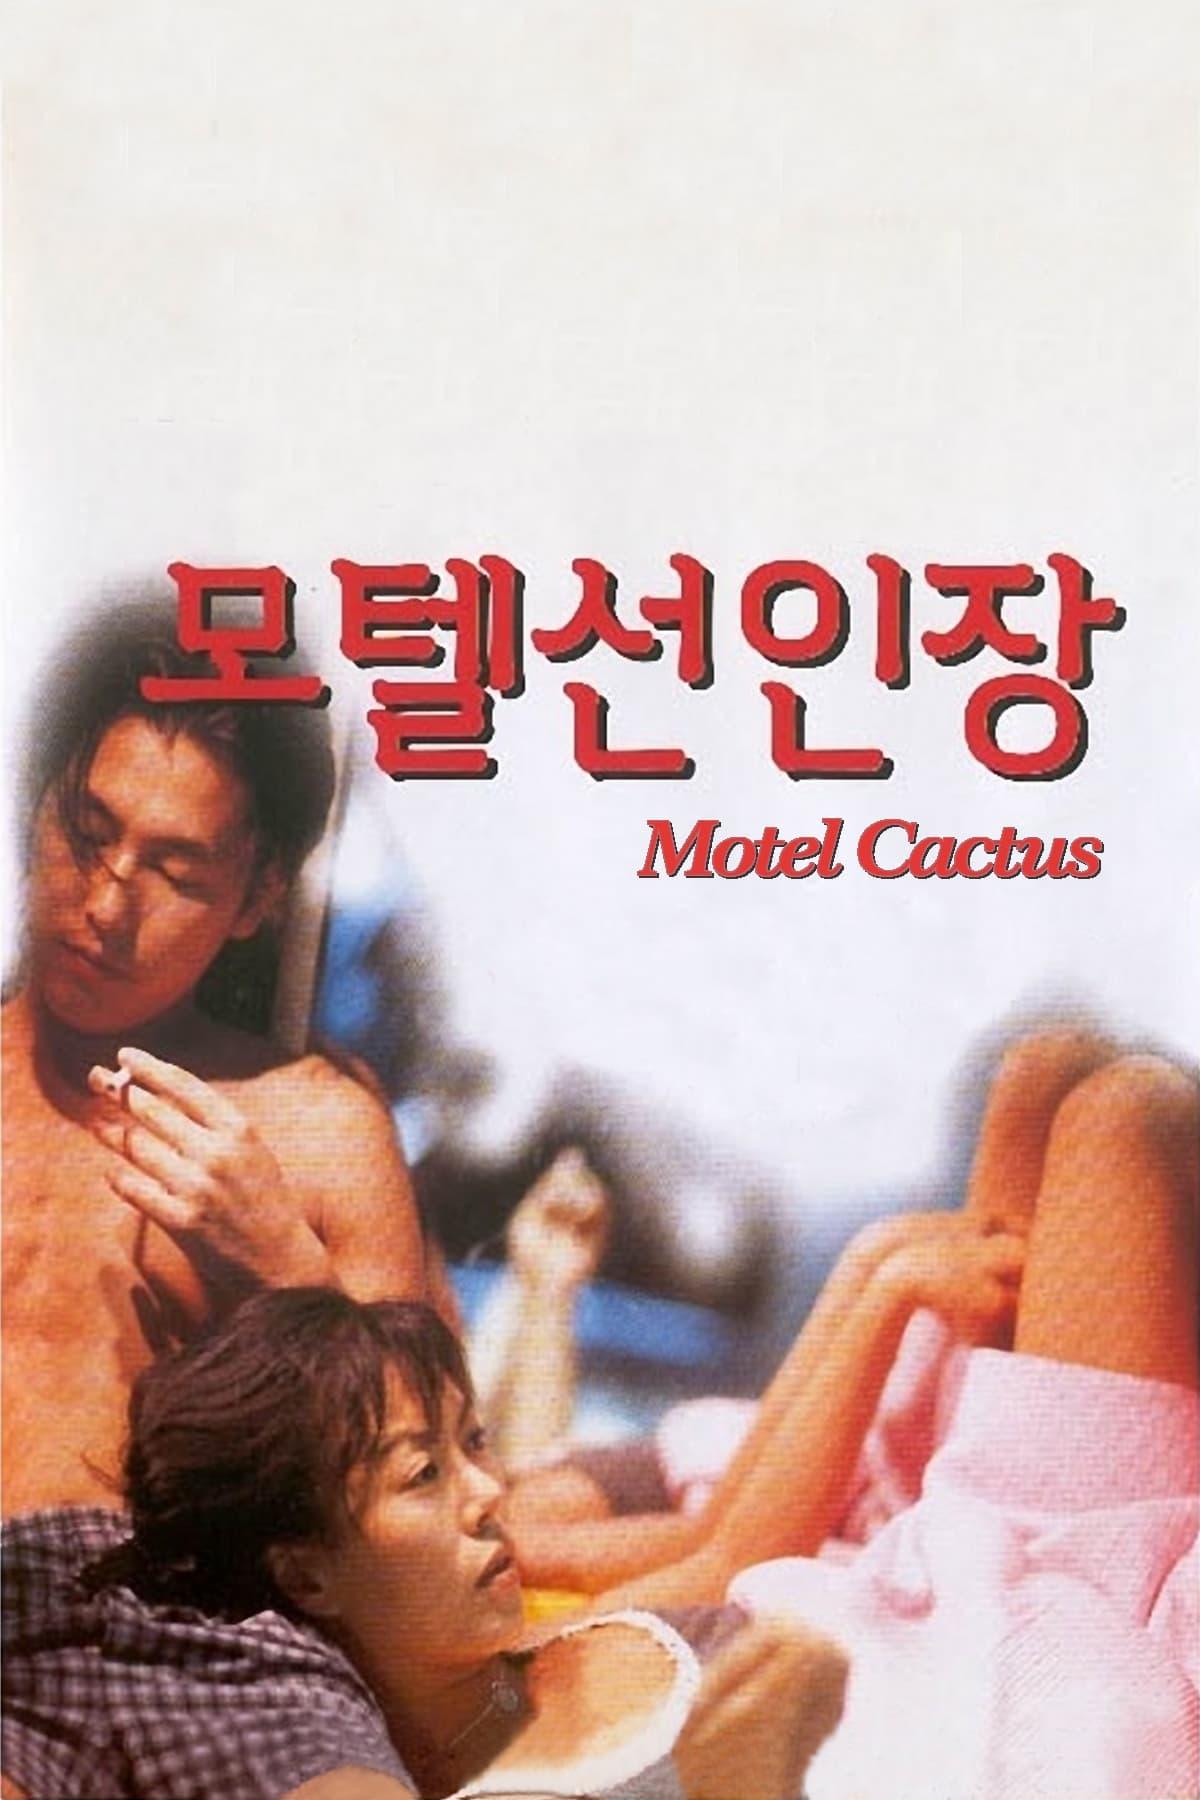 Motel Cactus poster